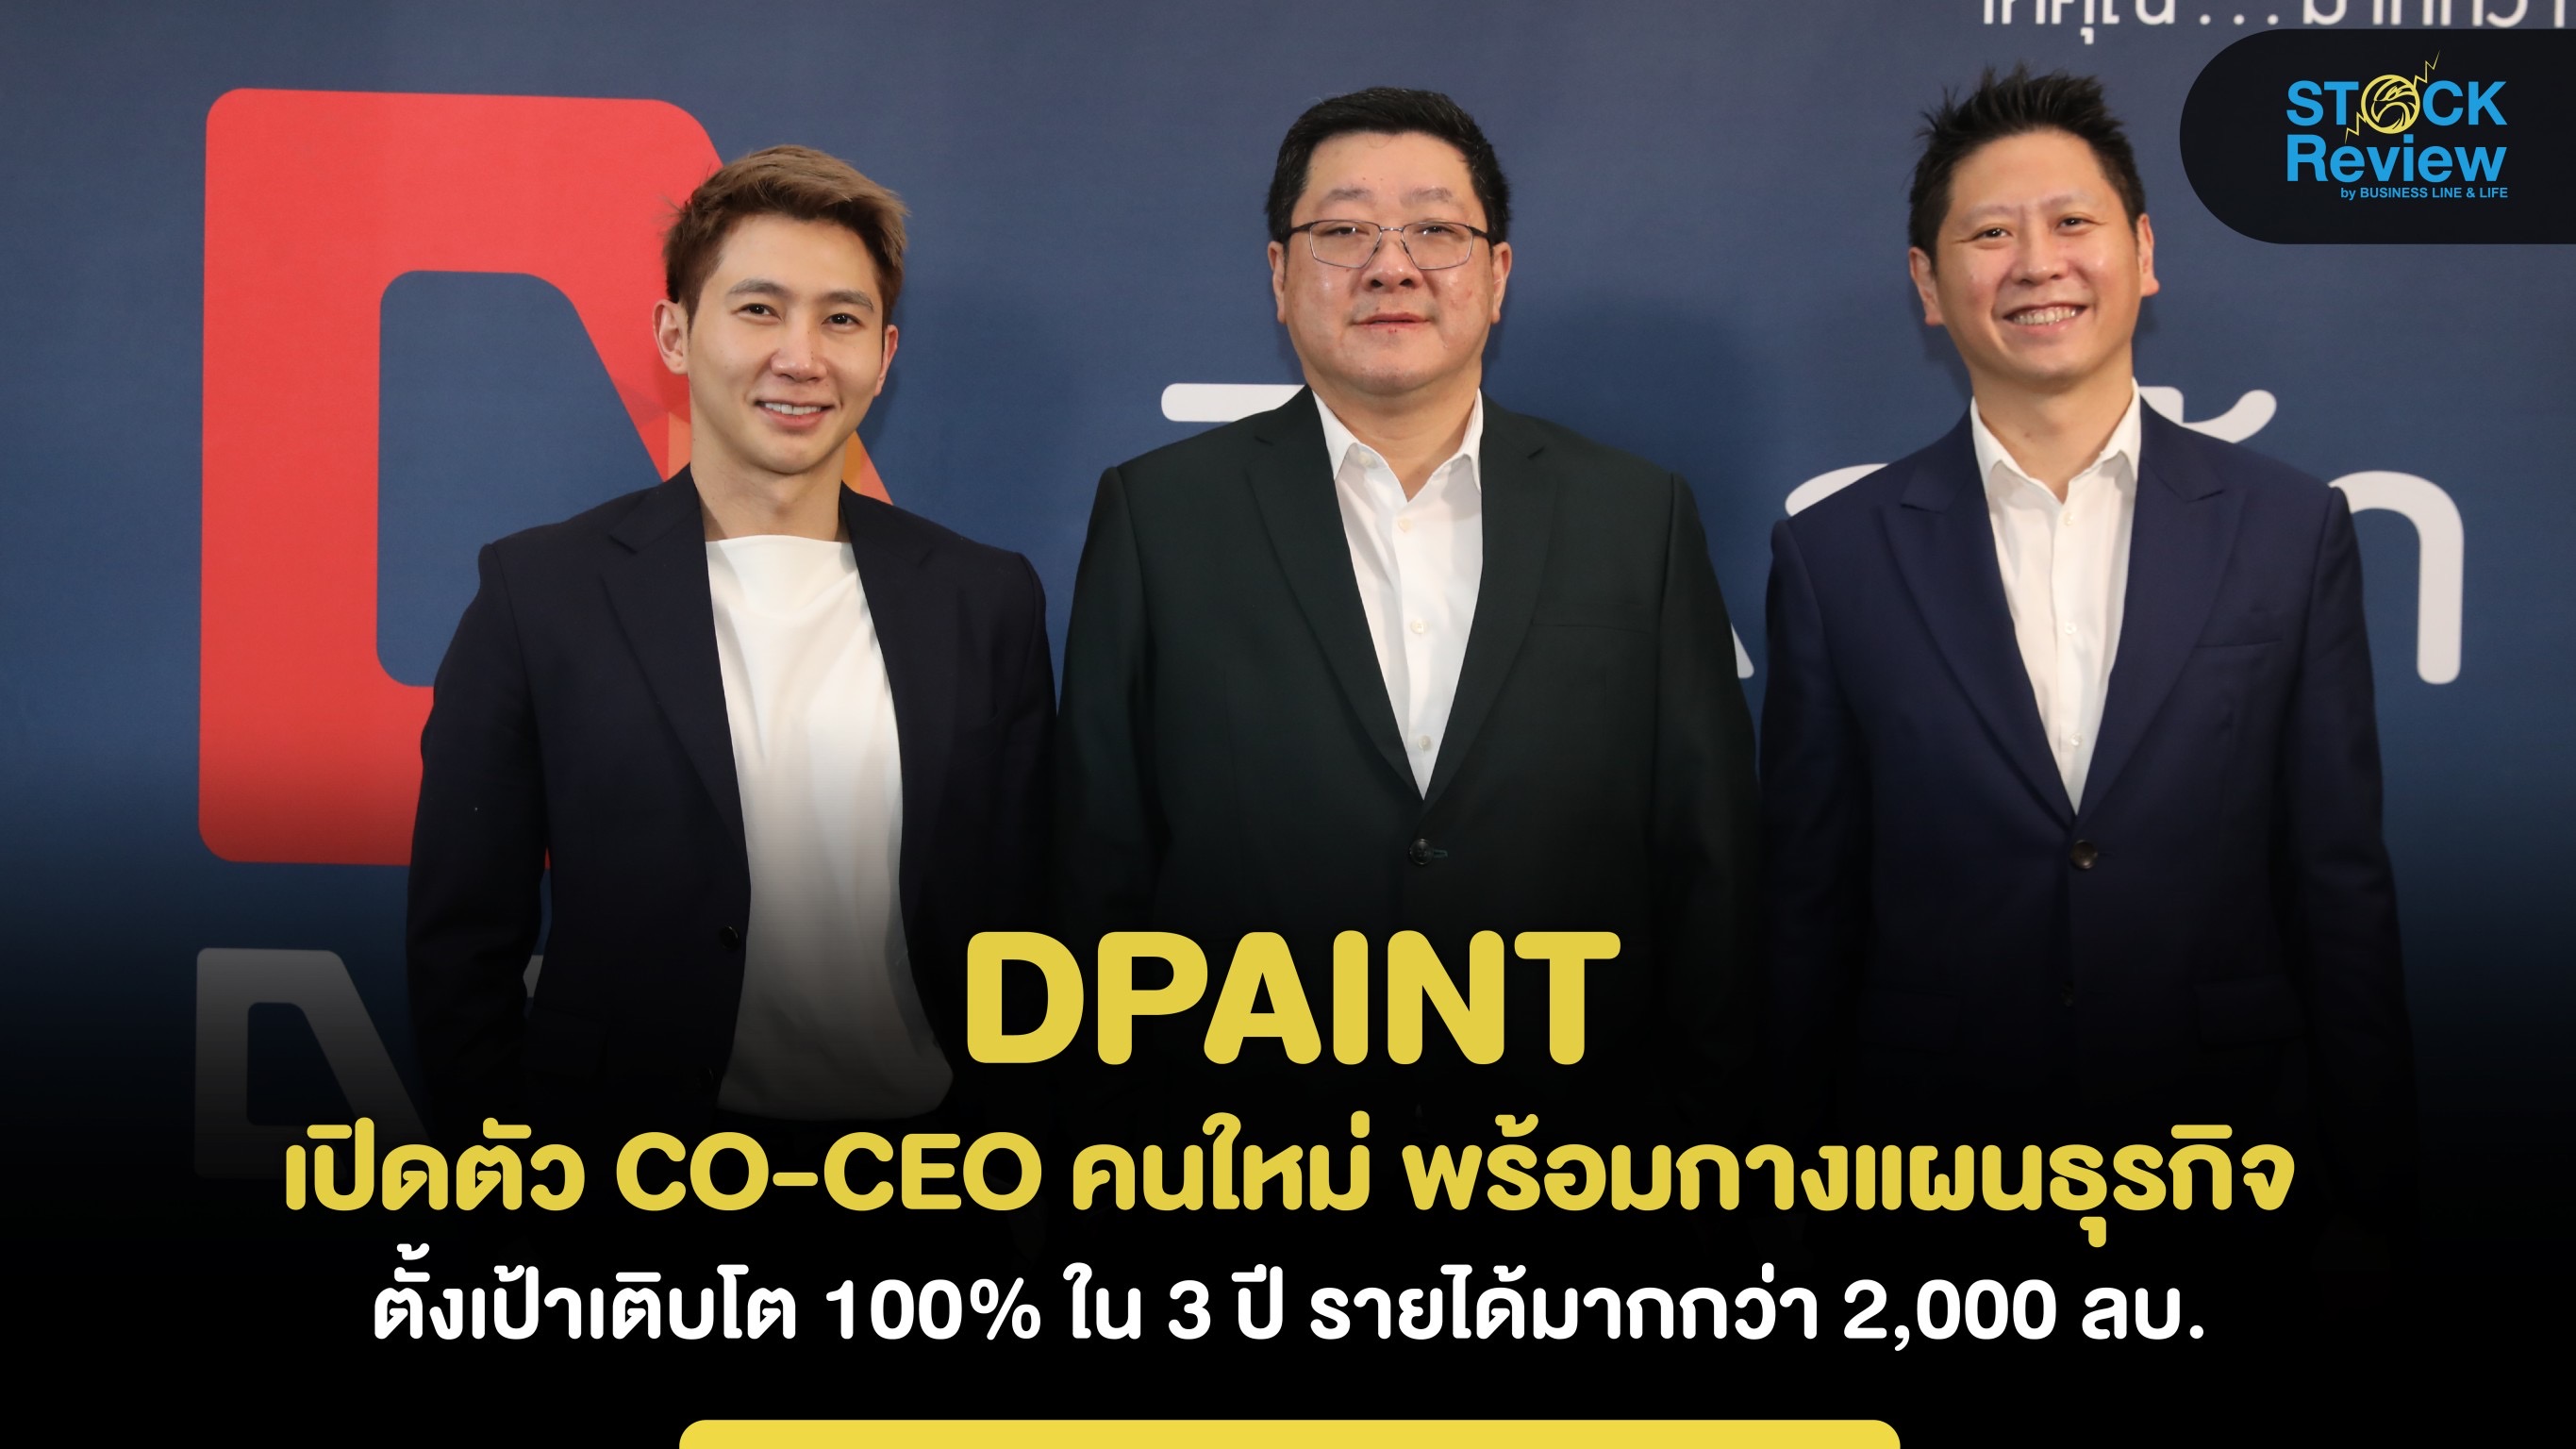 DPAINT เปิดตัว CO-CEO คนใหม่ พร้อมกางแผนธุรกิจ ตั้งเป้าเติบโต 100% ใน 3 ปี